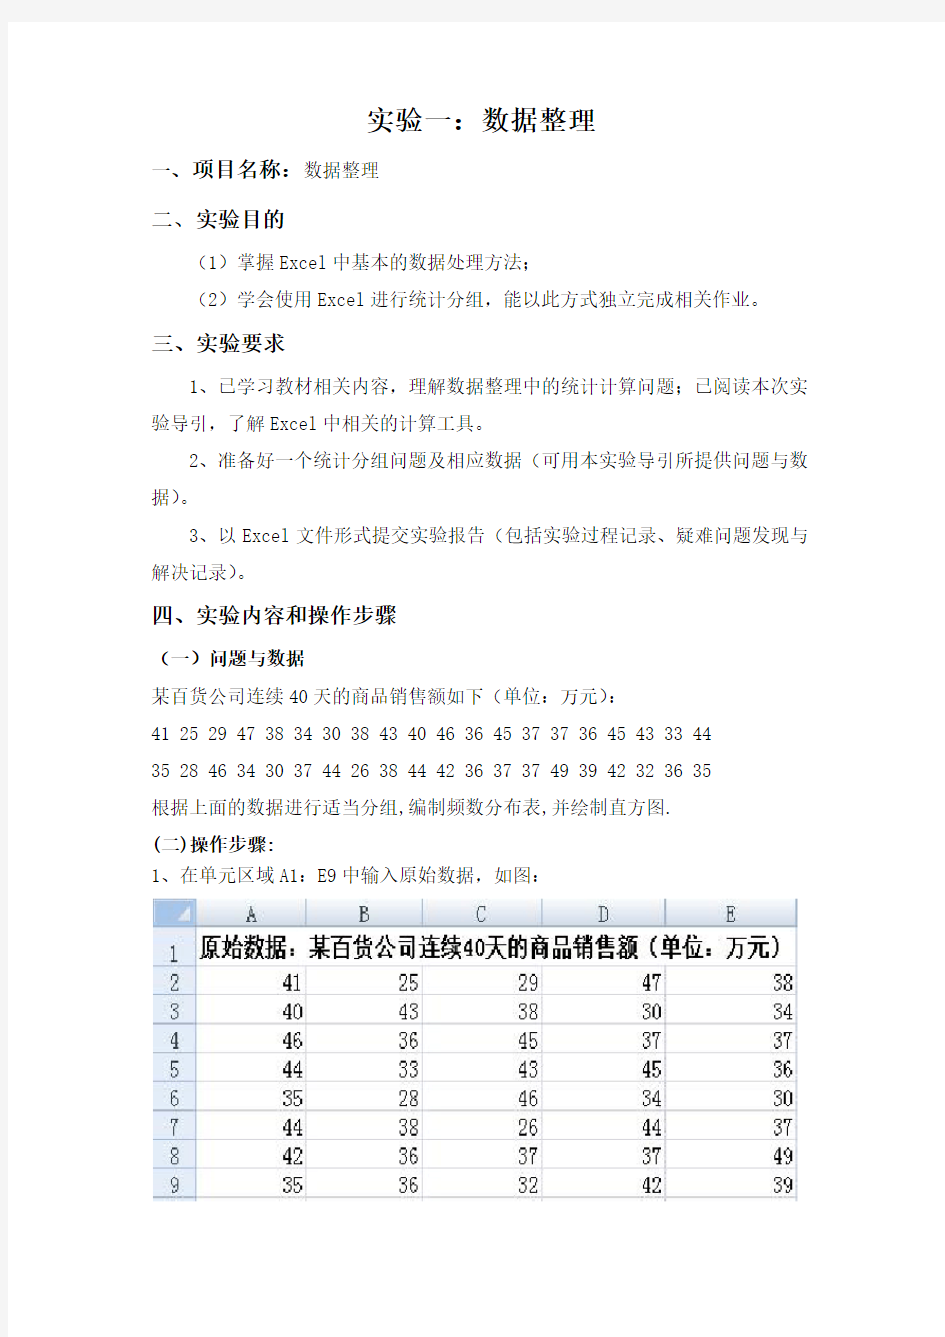 河南工业大学管理学院统计学实验报告